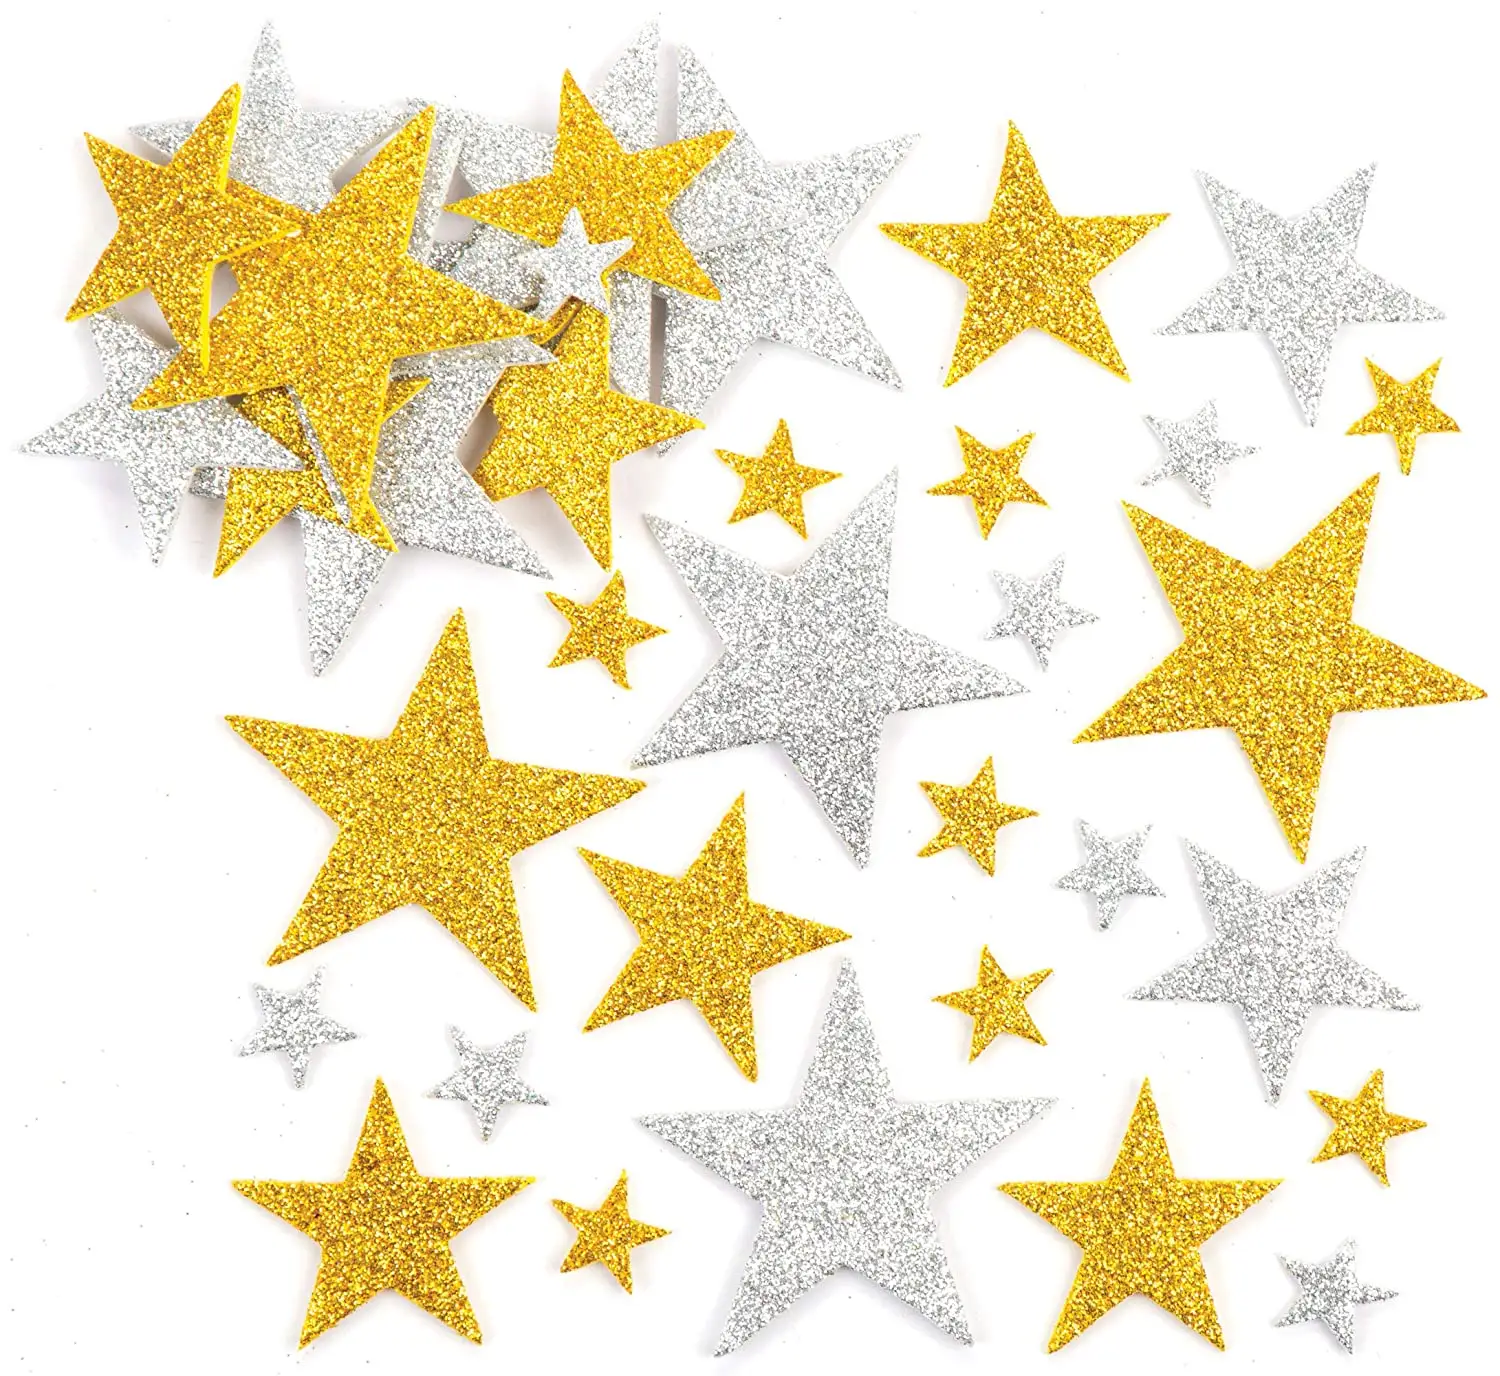 Altın ve gümüş EVA köpük etiket Bling Bling Glitter yıldız dekoratif Sticker